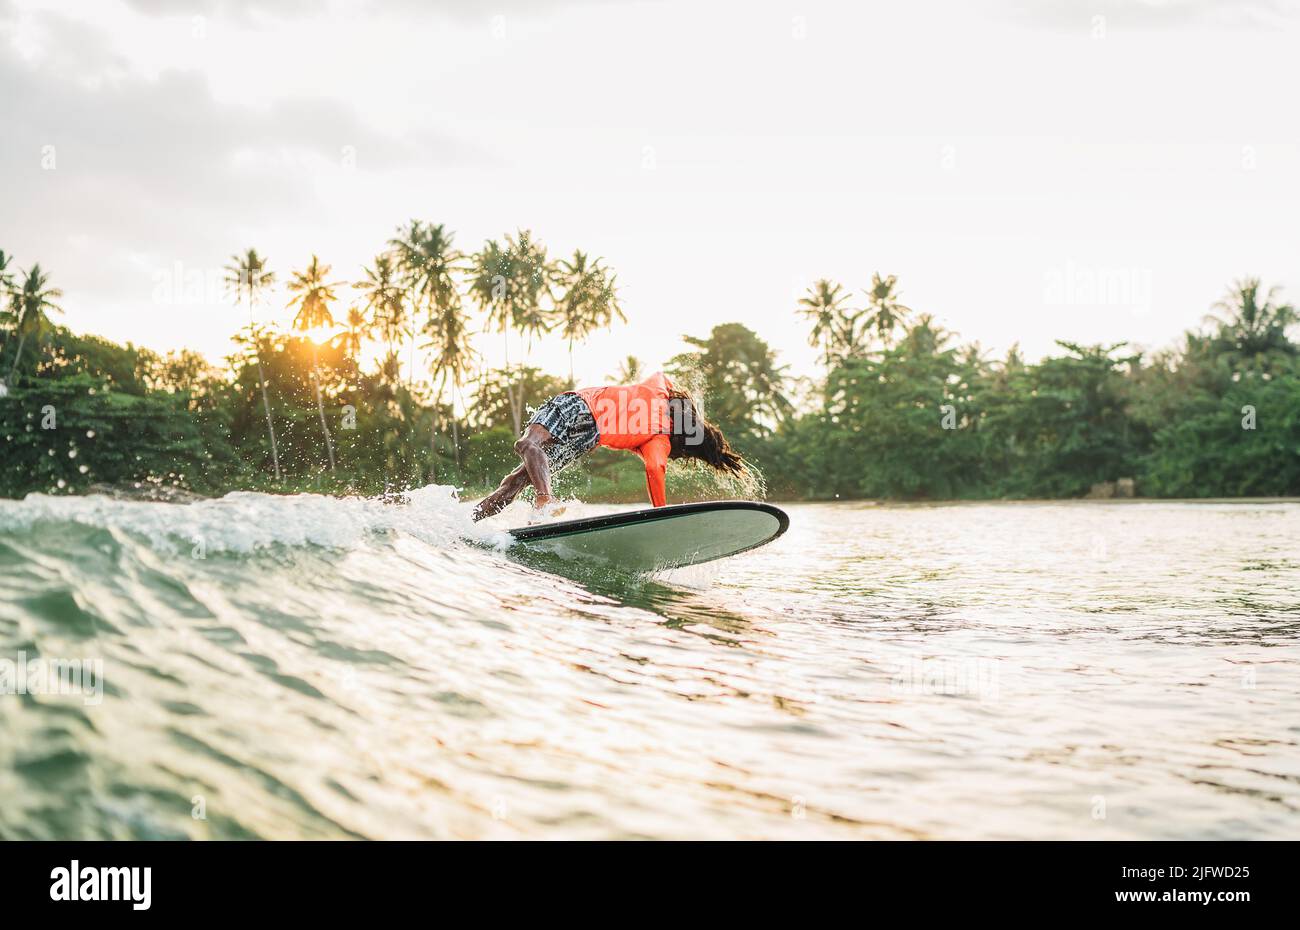 Schwarzer langhaariger Teenager-Junge, der von einem langen Surfbrett reitet und springt. Er fing eine Welle in einer Bucht des indischen Ozeans mit magischem Sonnenuntergang Hintergrund. Extreme Wa Stockfoto